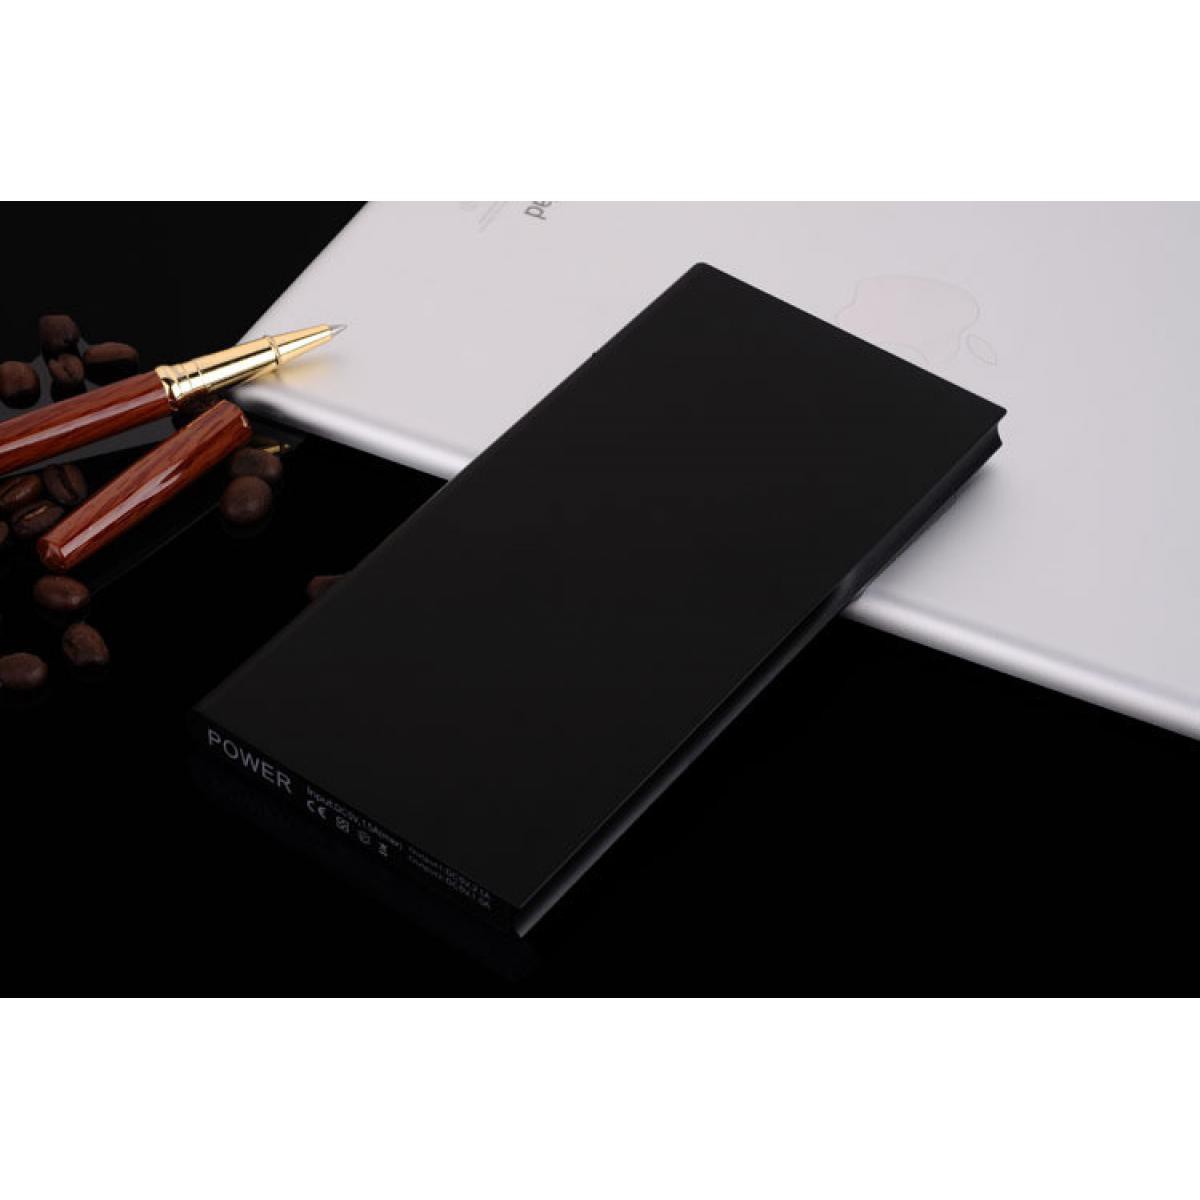 Shot - Batterie Externe Plate pour XIAOMI Redmi 7A Smartphone Tablette Chargeur Power Bank 6000mAh 2 Port USB (NOIR) - Chargeur secteur téléphone